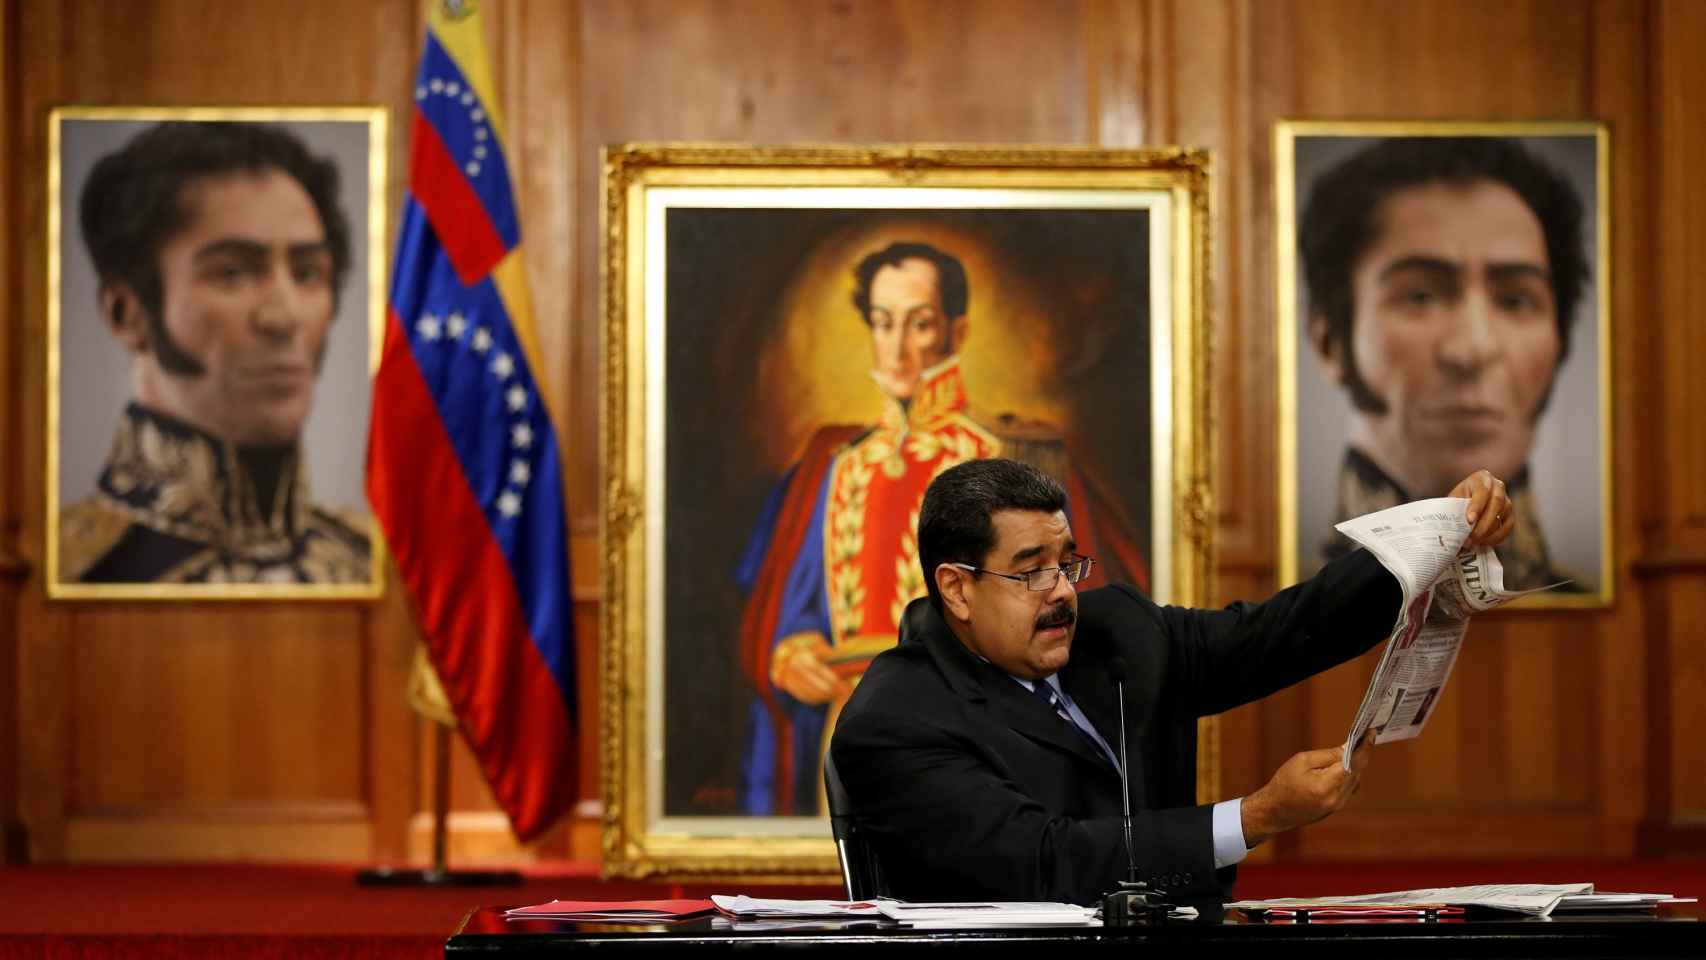 El presidente venezolano Nicolás Maduro en una rueda de prensa/Carlos Garcia Rawlins/Reuters